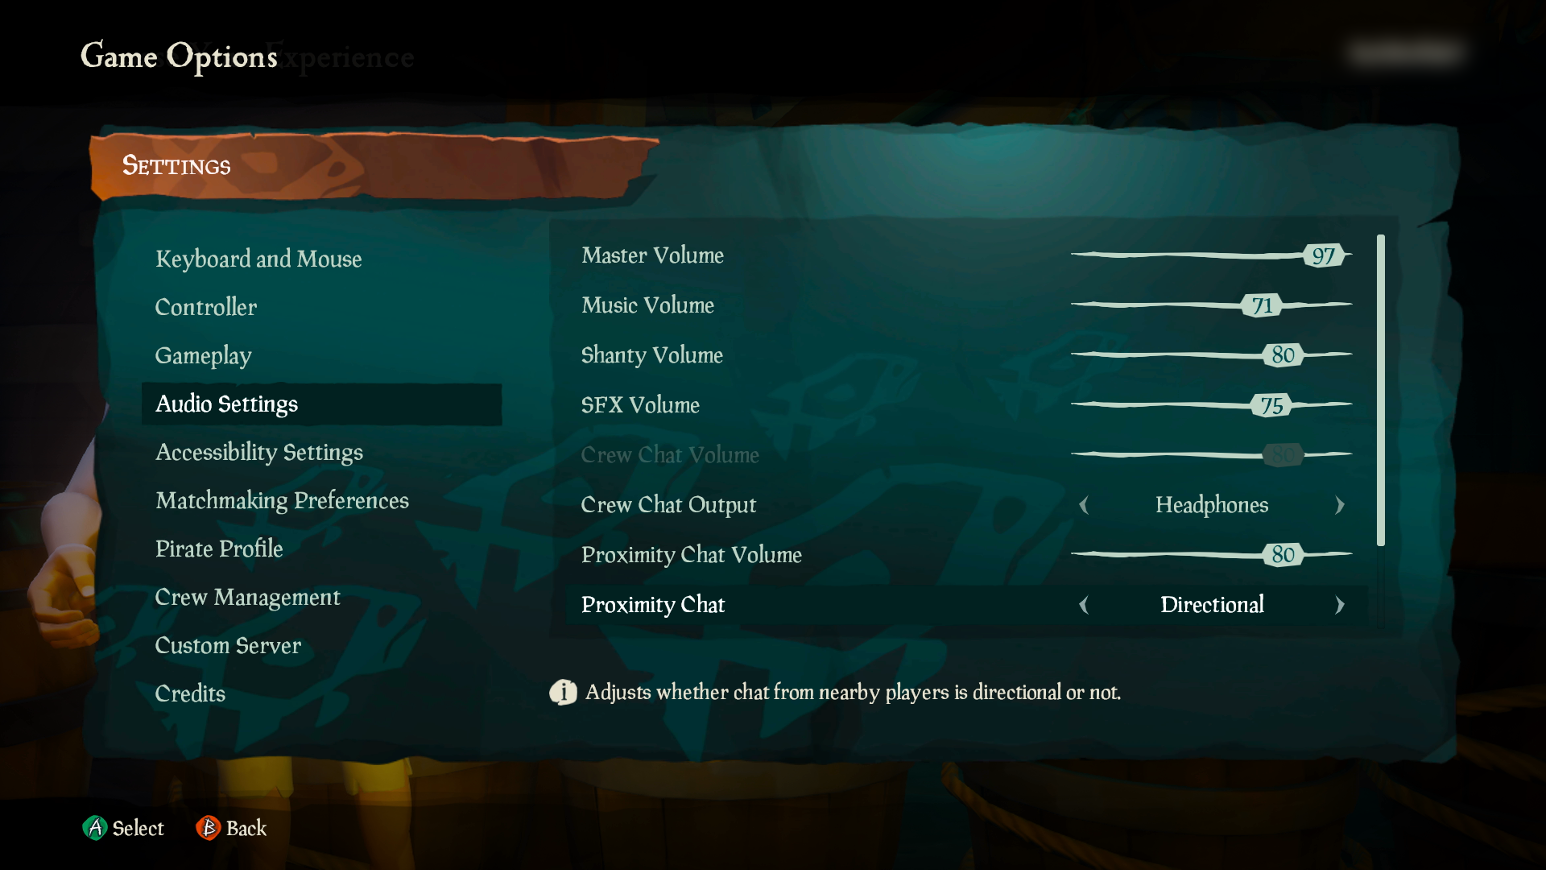 [オーディオ設定] タブが選択されている Sea of Thieves ゲーム オプションのスクリーンショット。